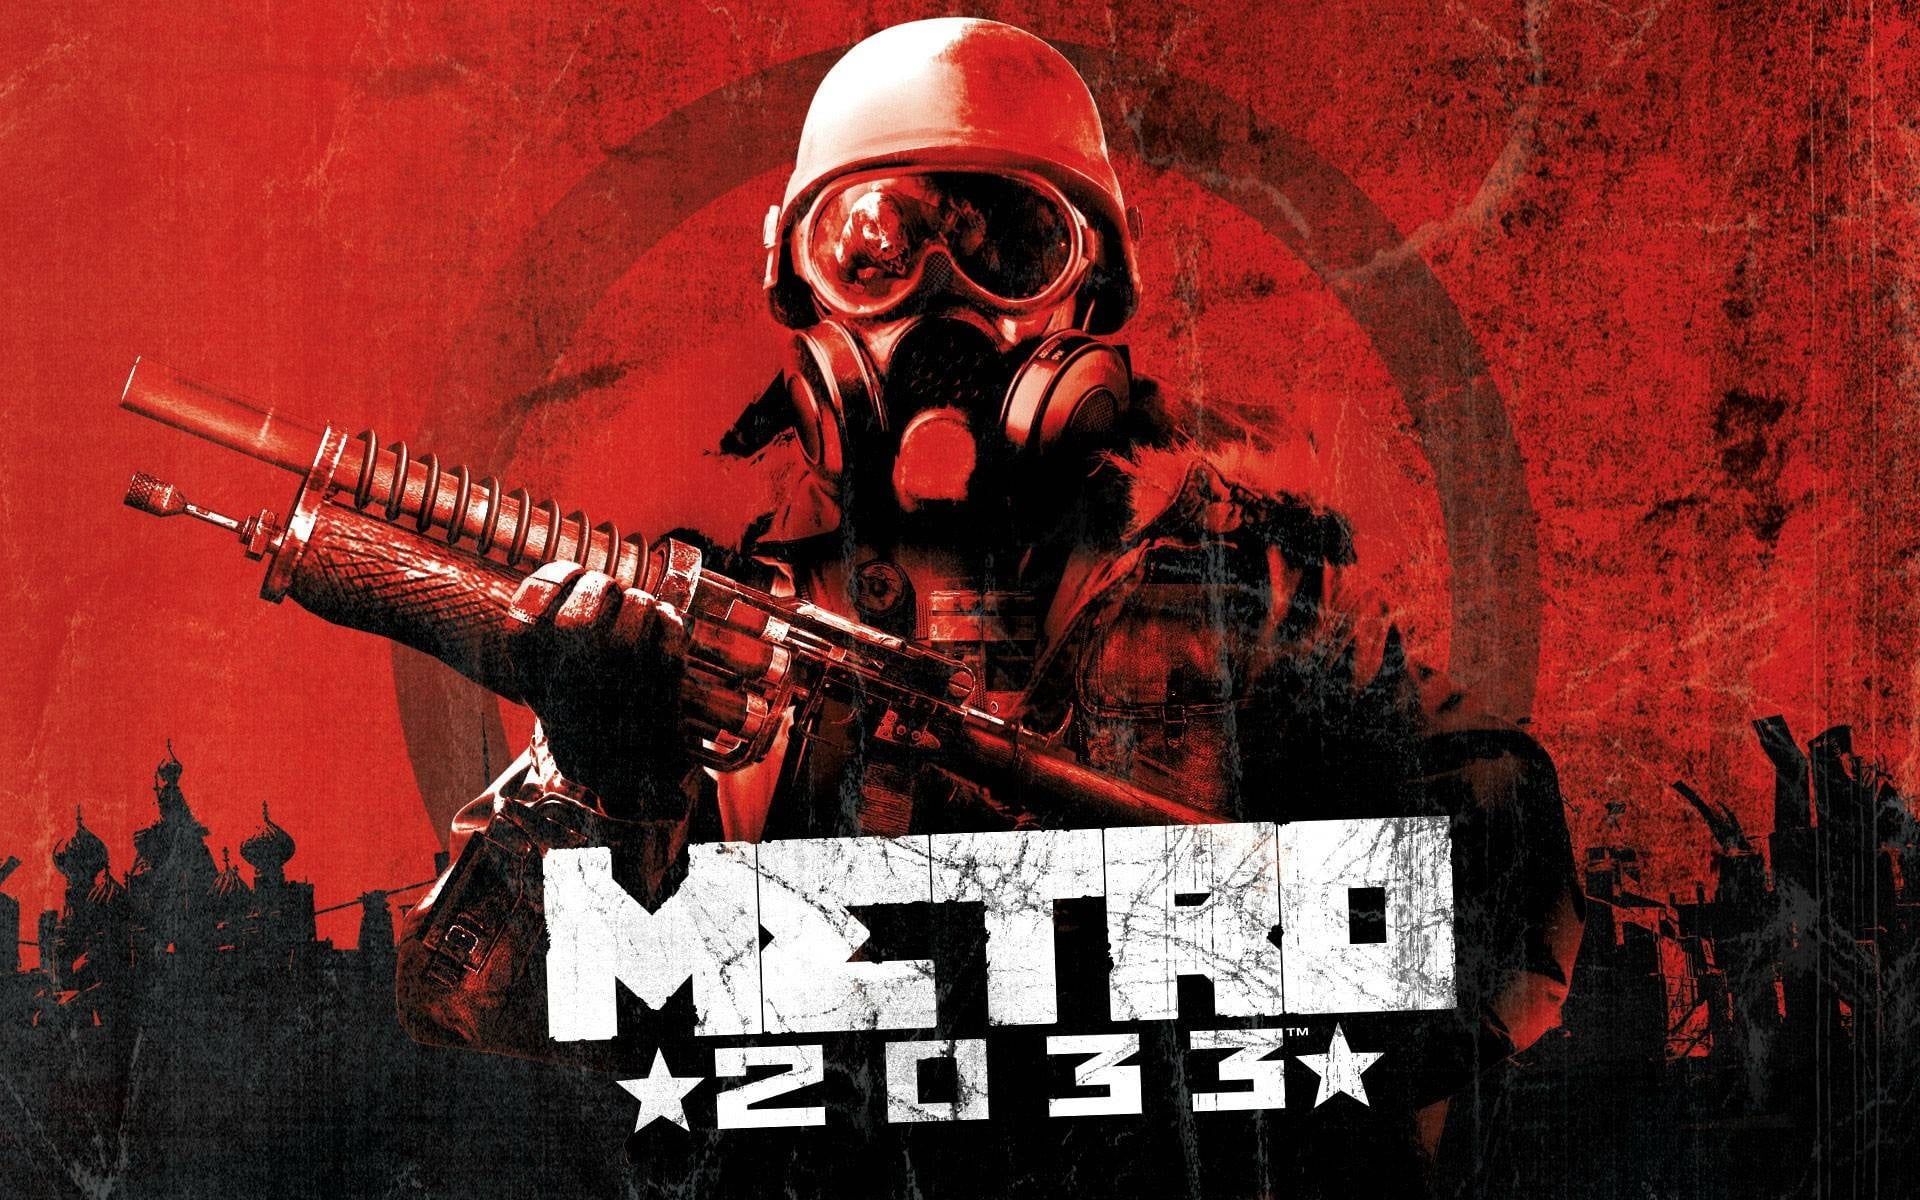 2033 Metro wallpaper, Metro 2033, video games